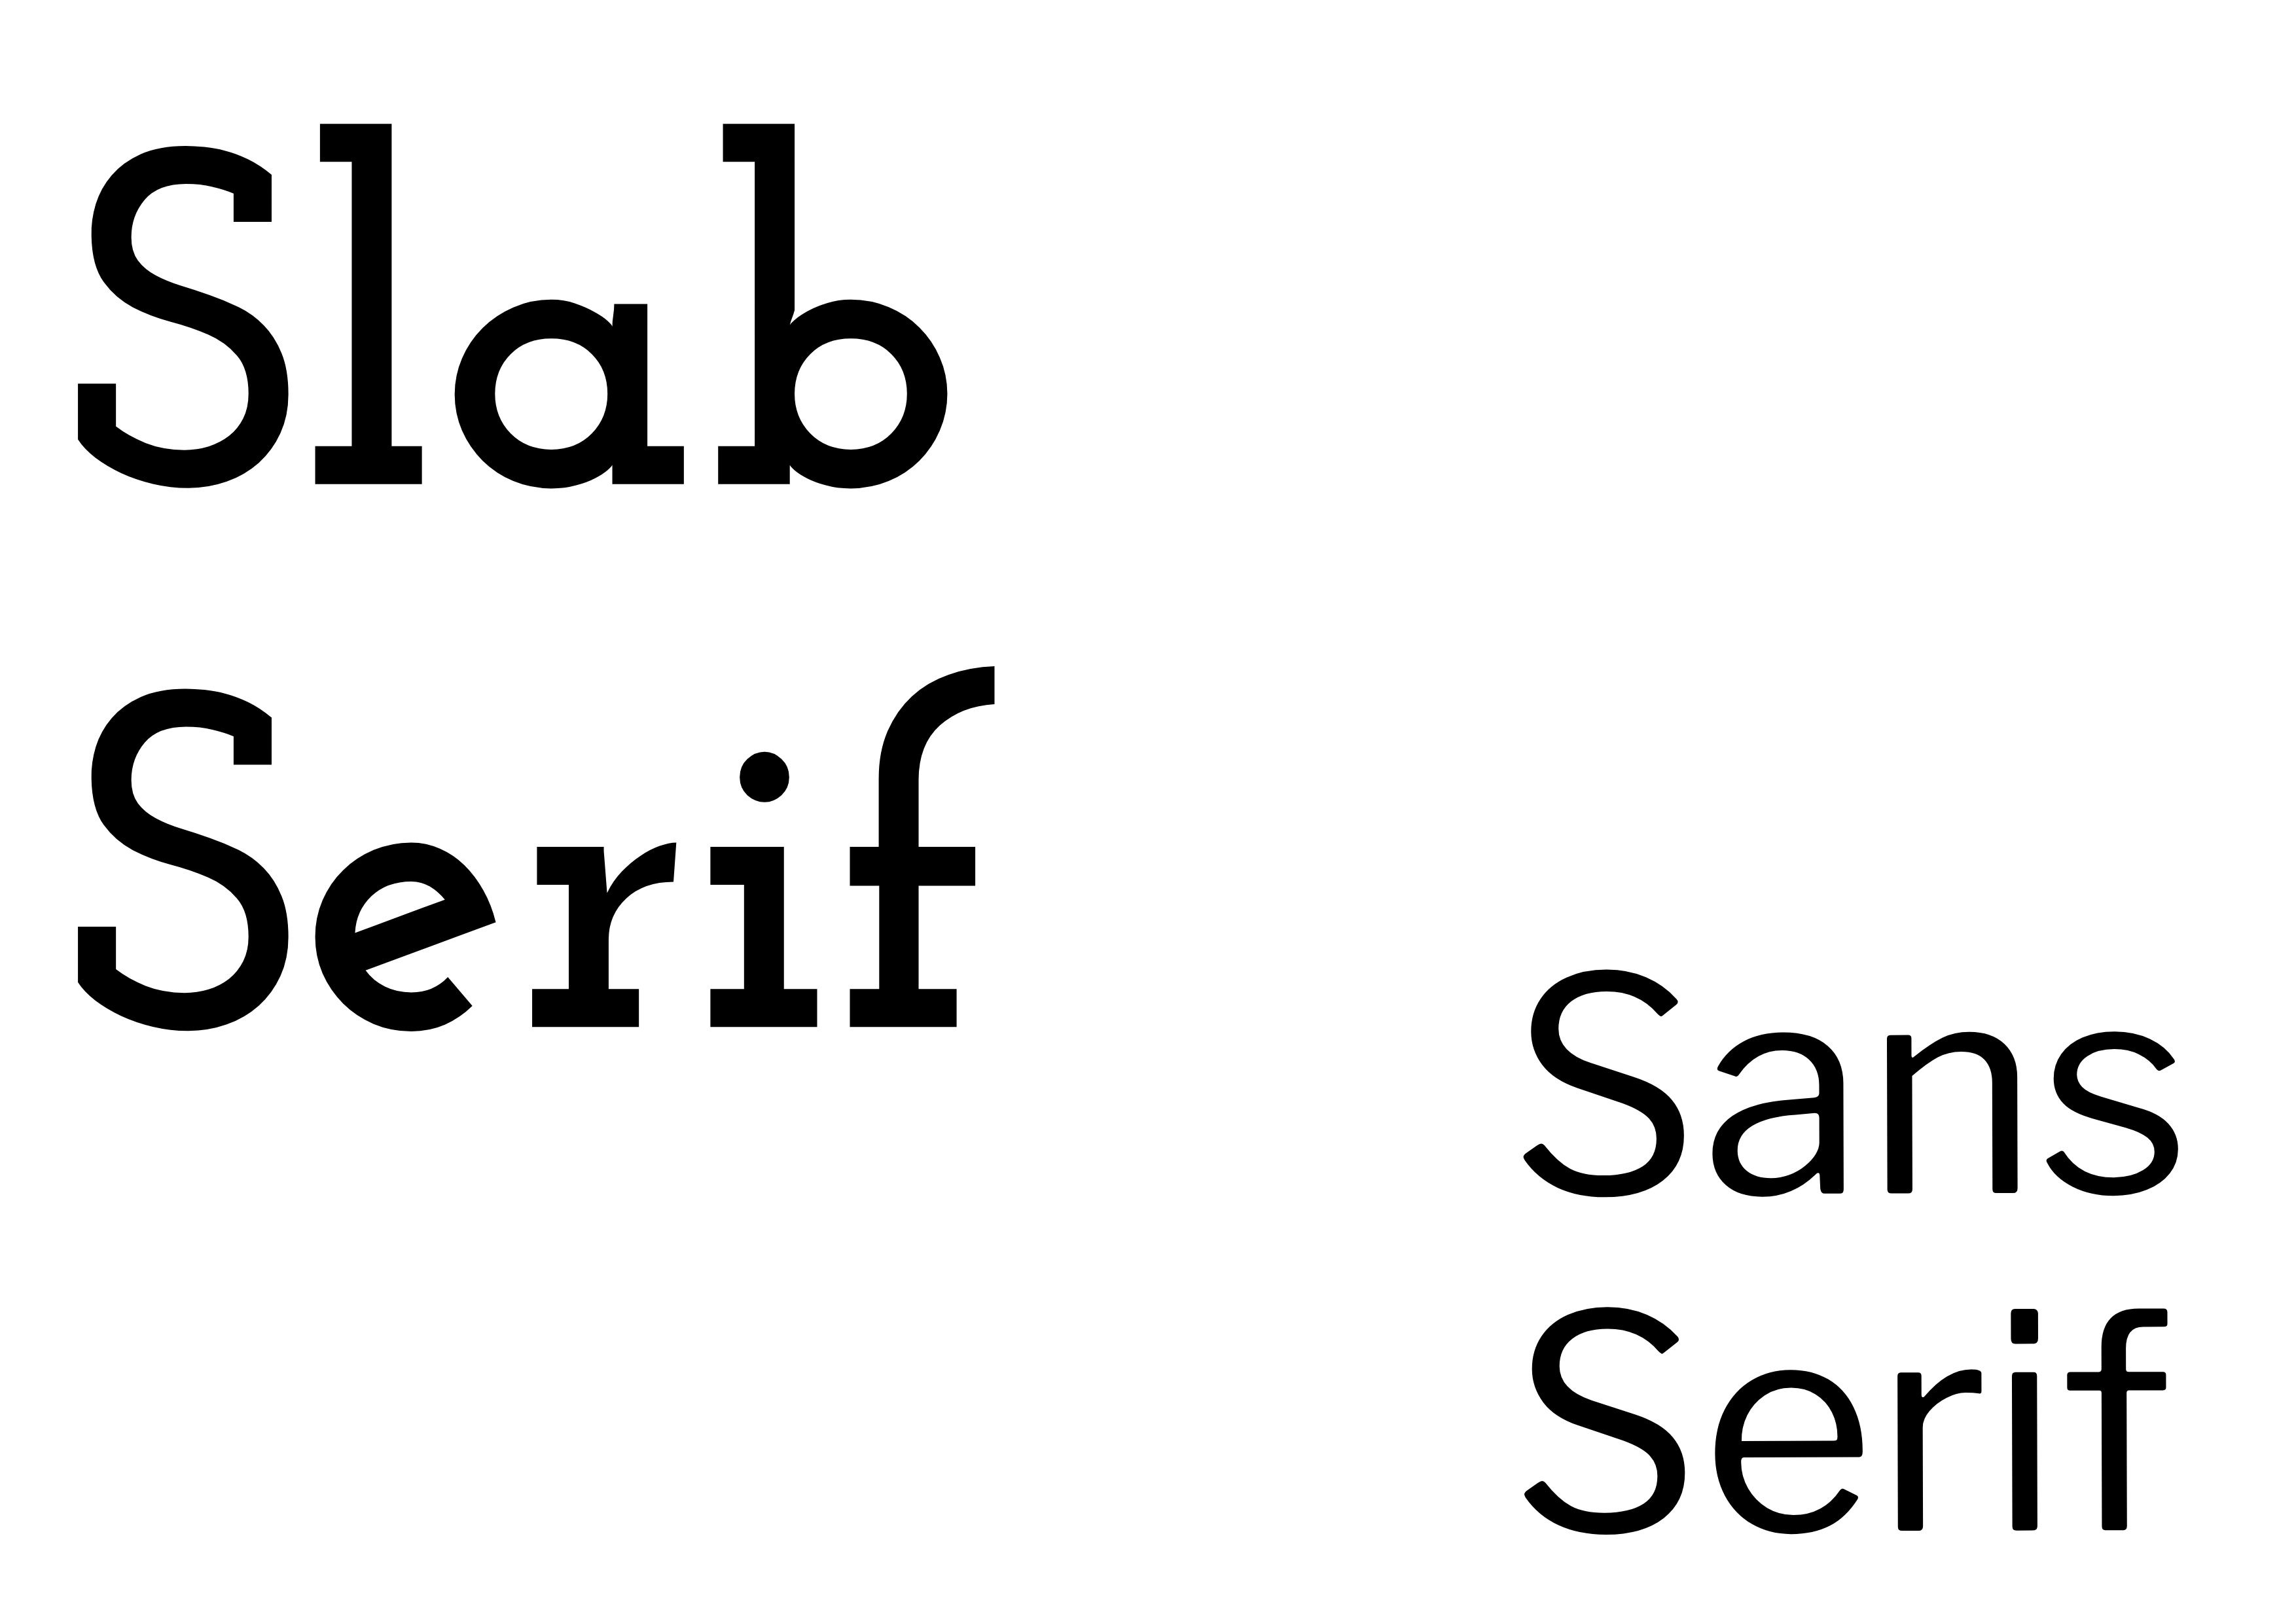 Schriftartenpaarung – „Slab Serif“ in fettem Schwarz auf der linken Seite und „Sans Serif“ in Schwarz, kleiner auf der rechten Seite